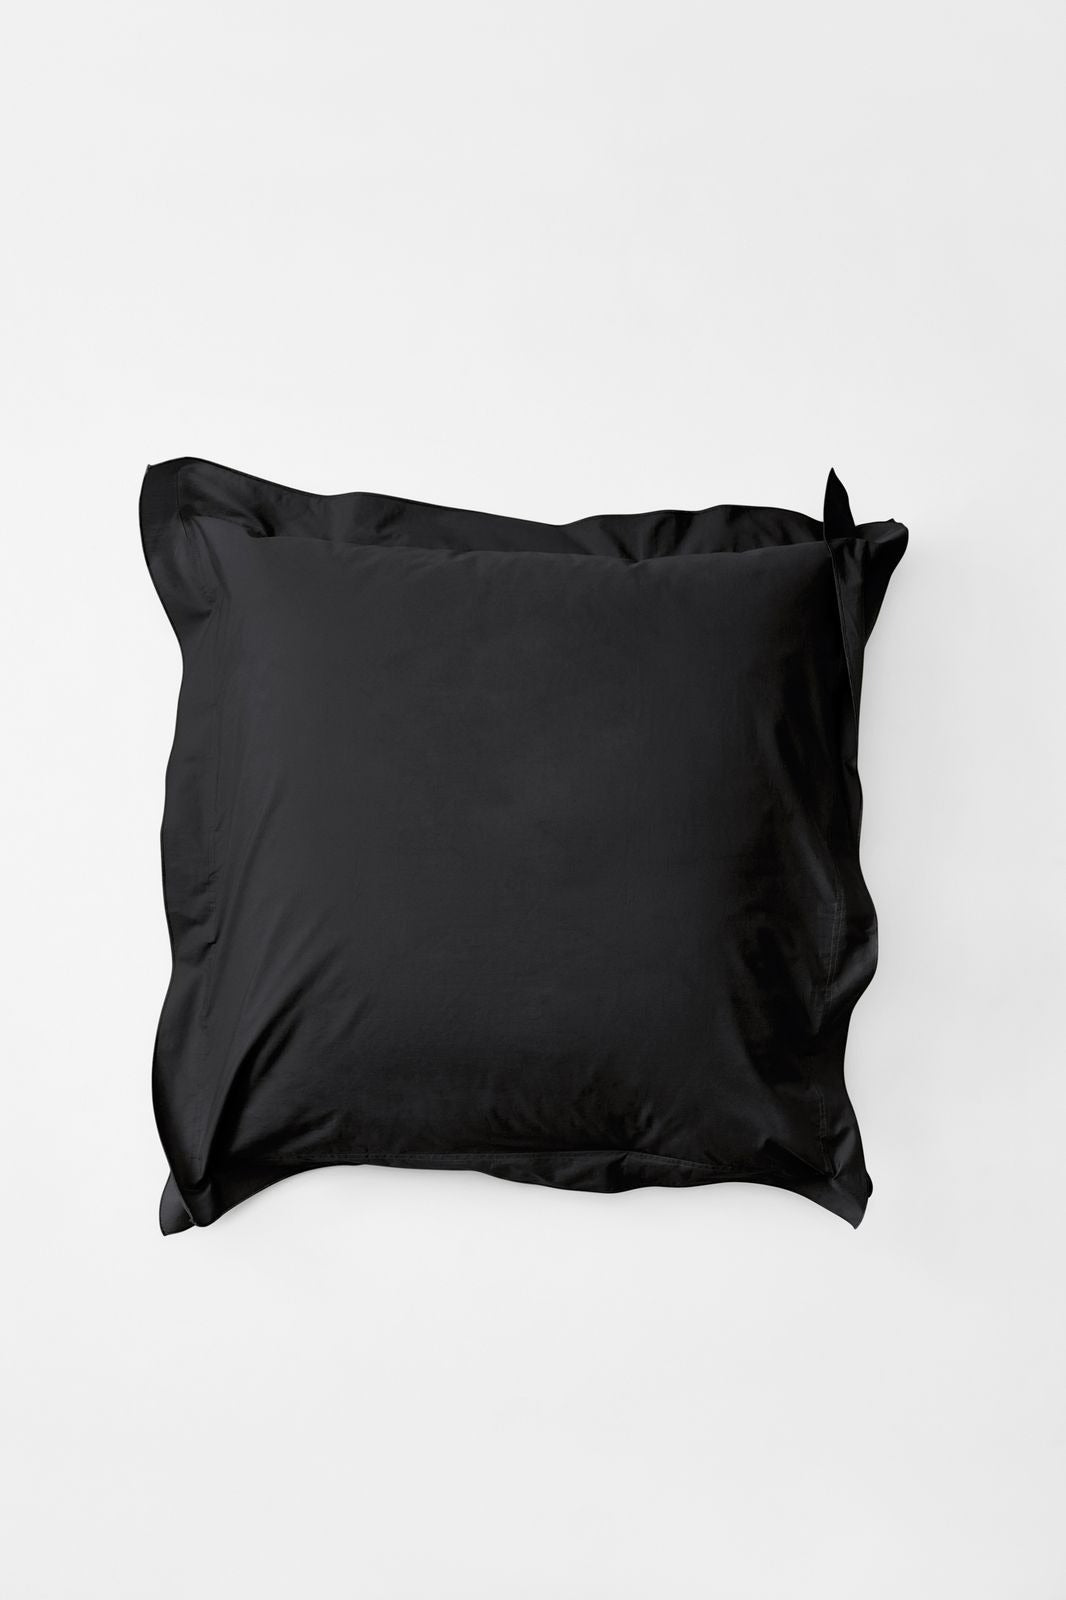 Mono Organic Cotton Percale Pillow Pair - Cinder Pillows in Euro Pillow